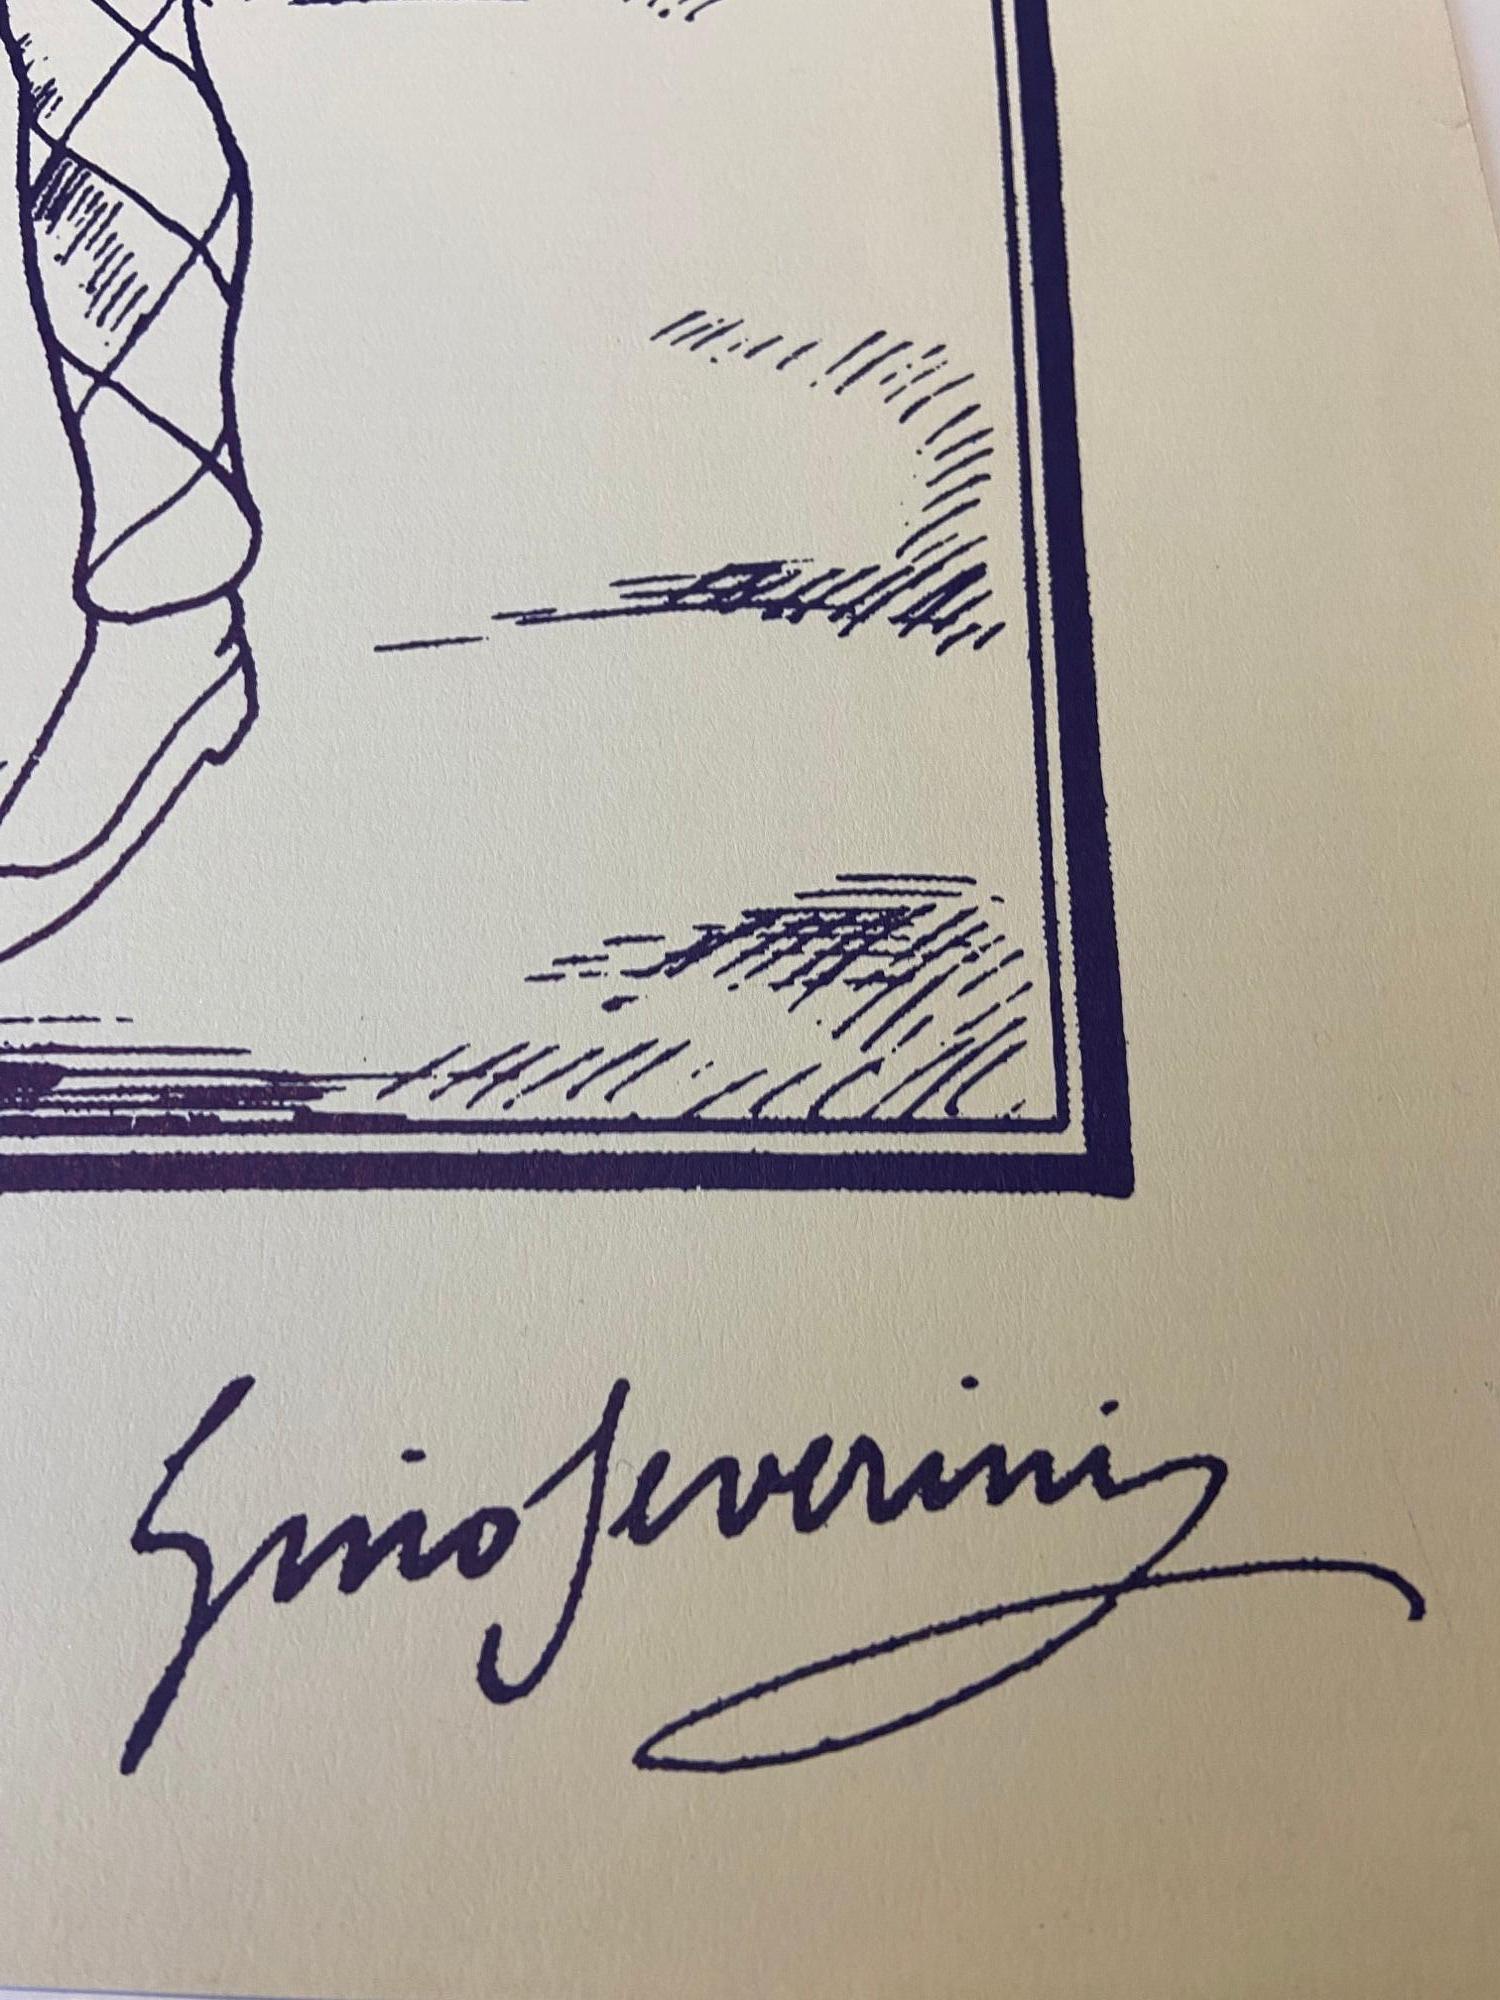 Gino Serverini  
exprints Commedia dell'arte
64 x 46 cm  
about 1962
signature dans la planche
190 euros